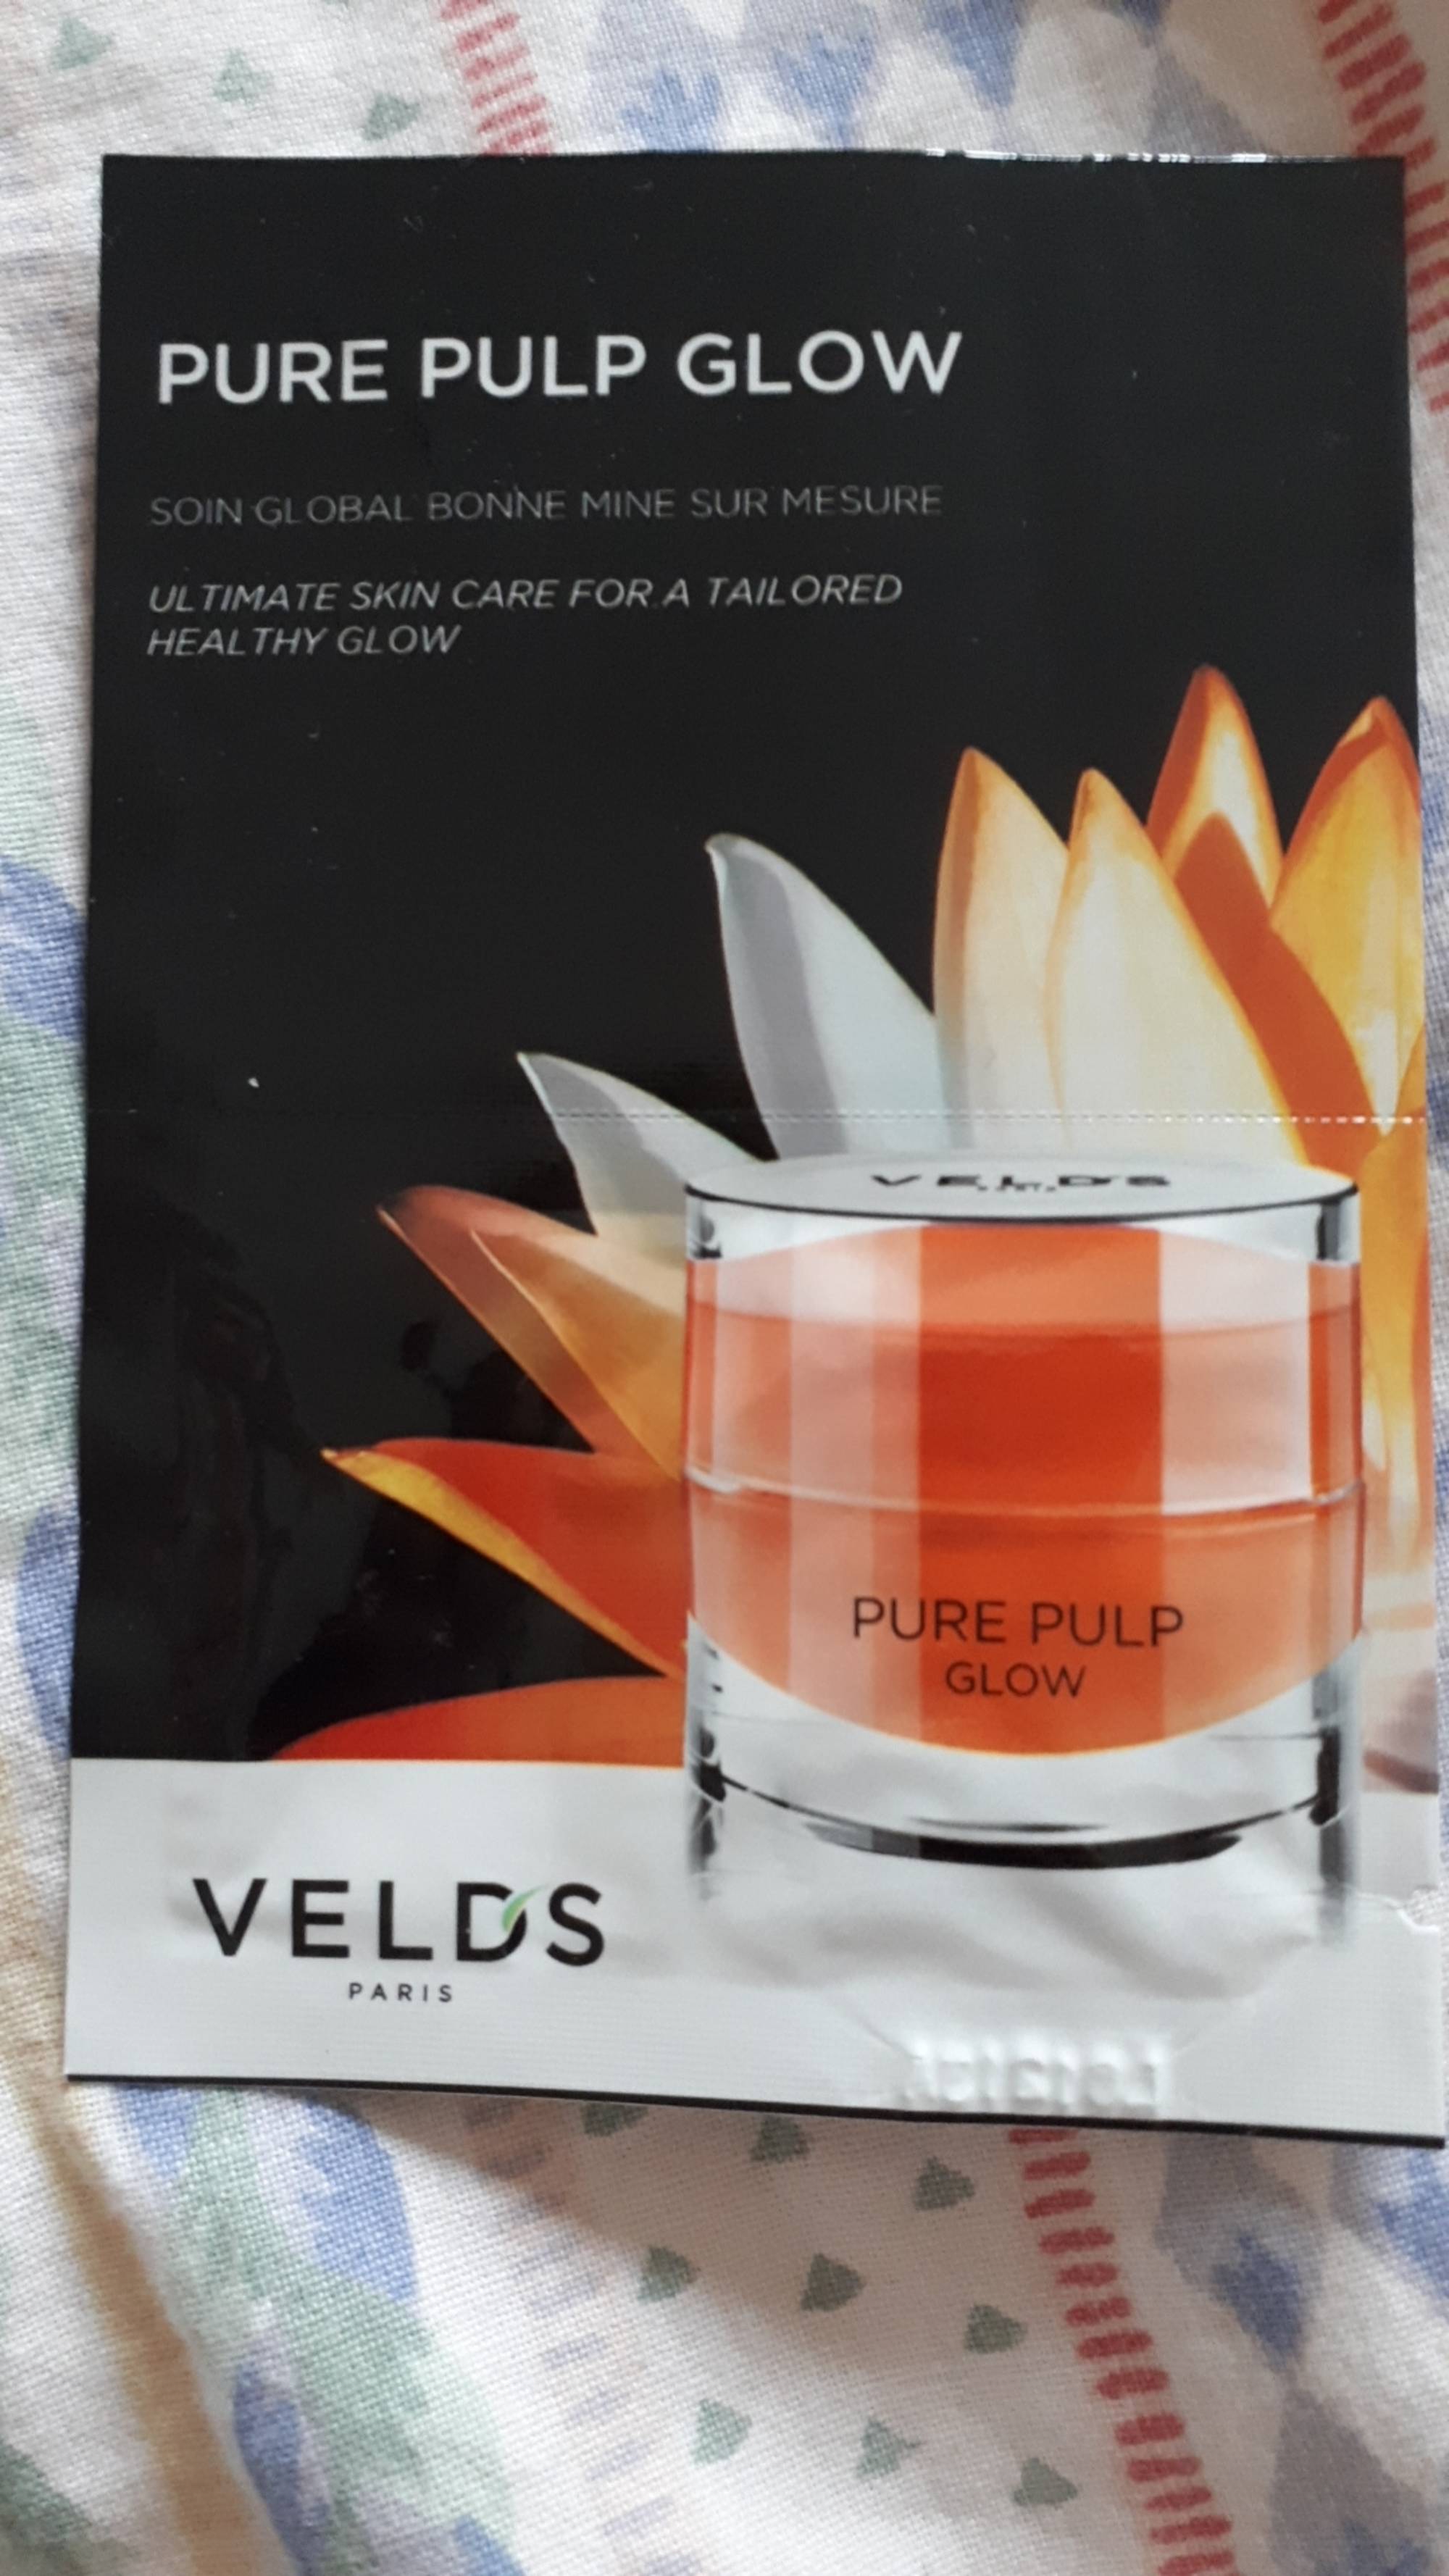 VELD'S - Pure pulp glow - Soin global bonne mine sur mesure